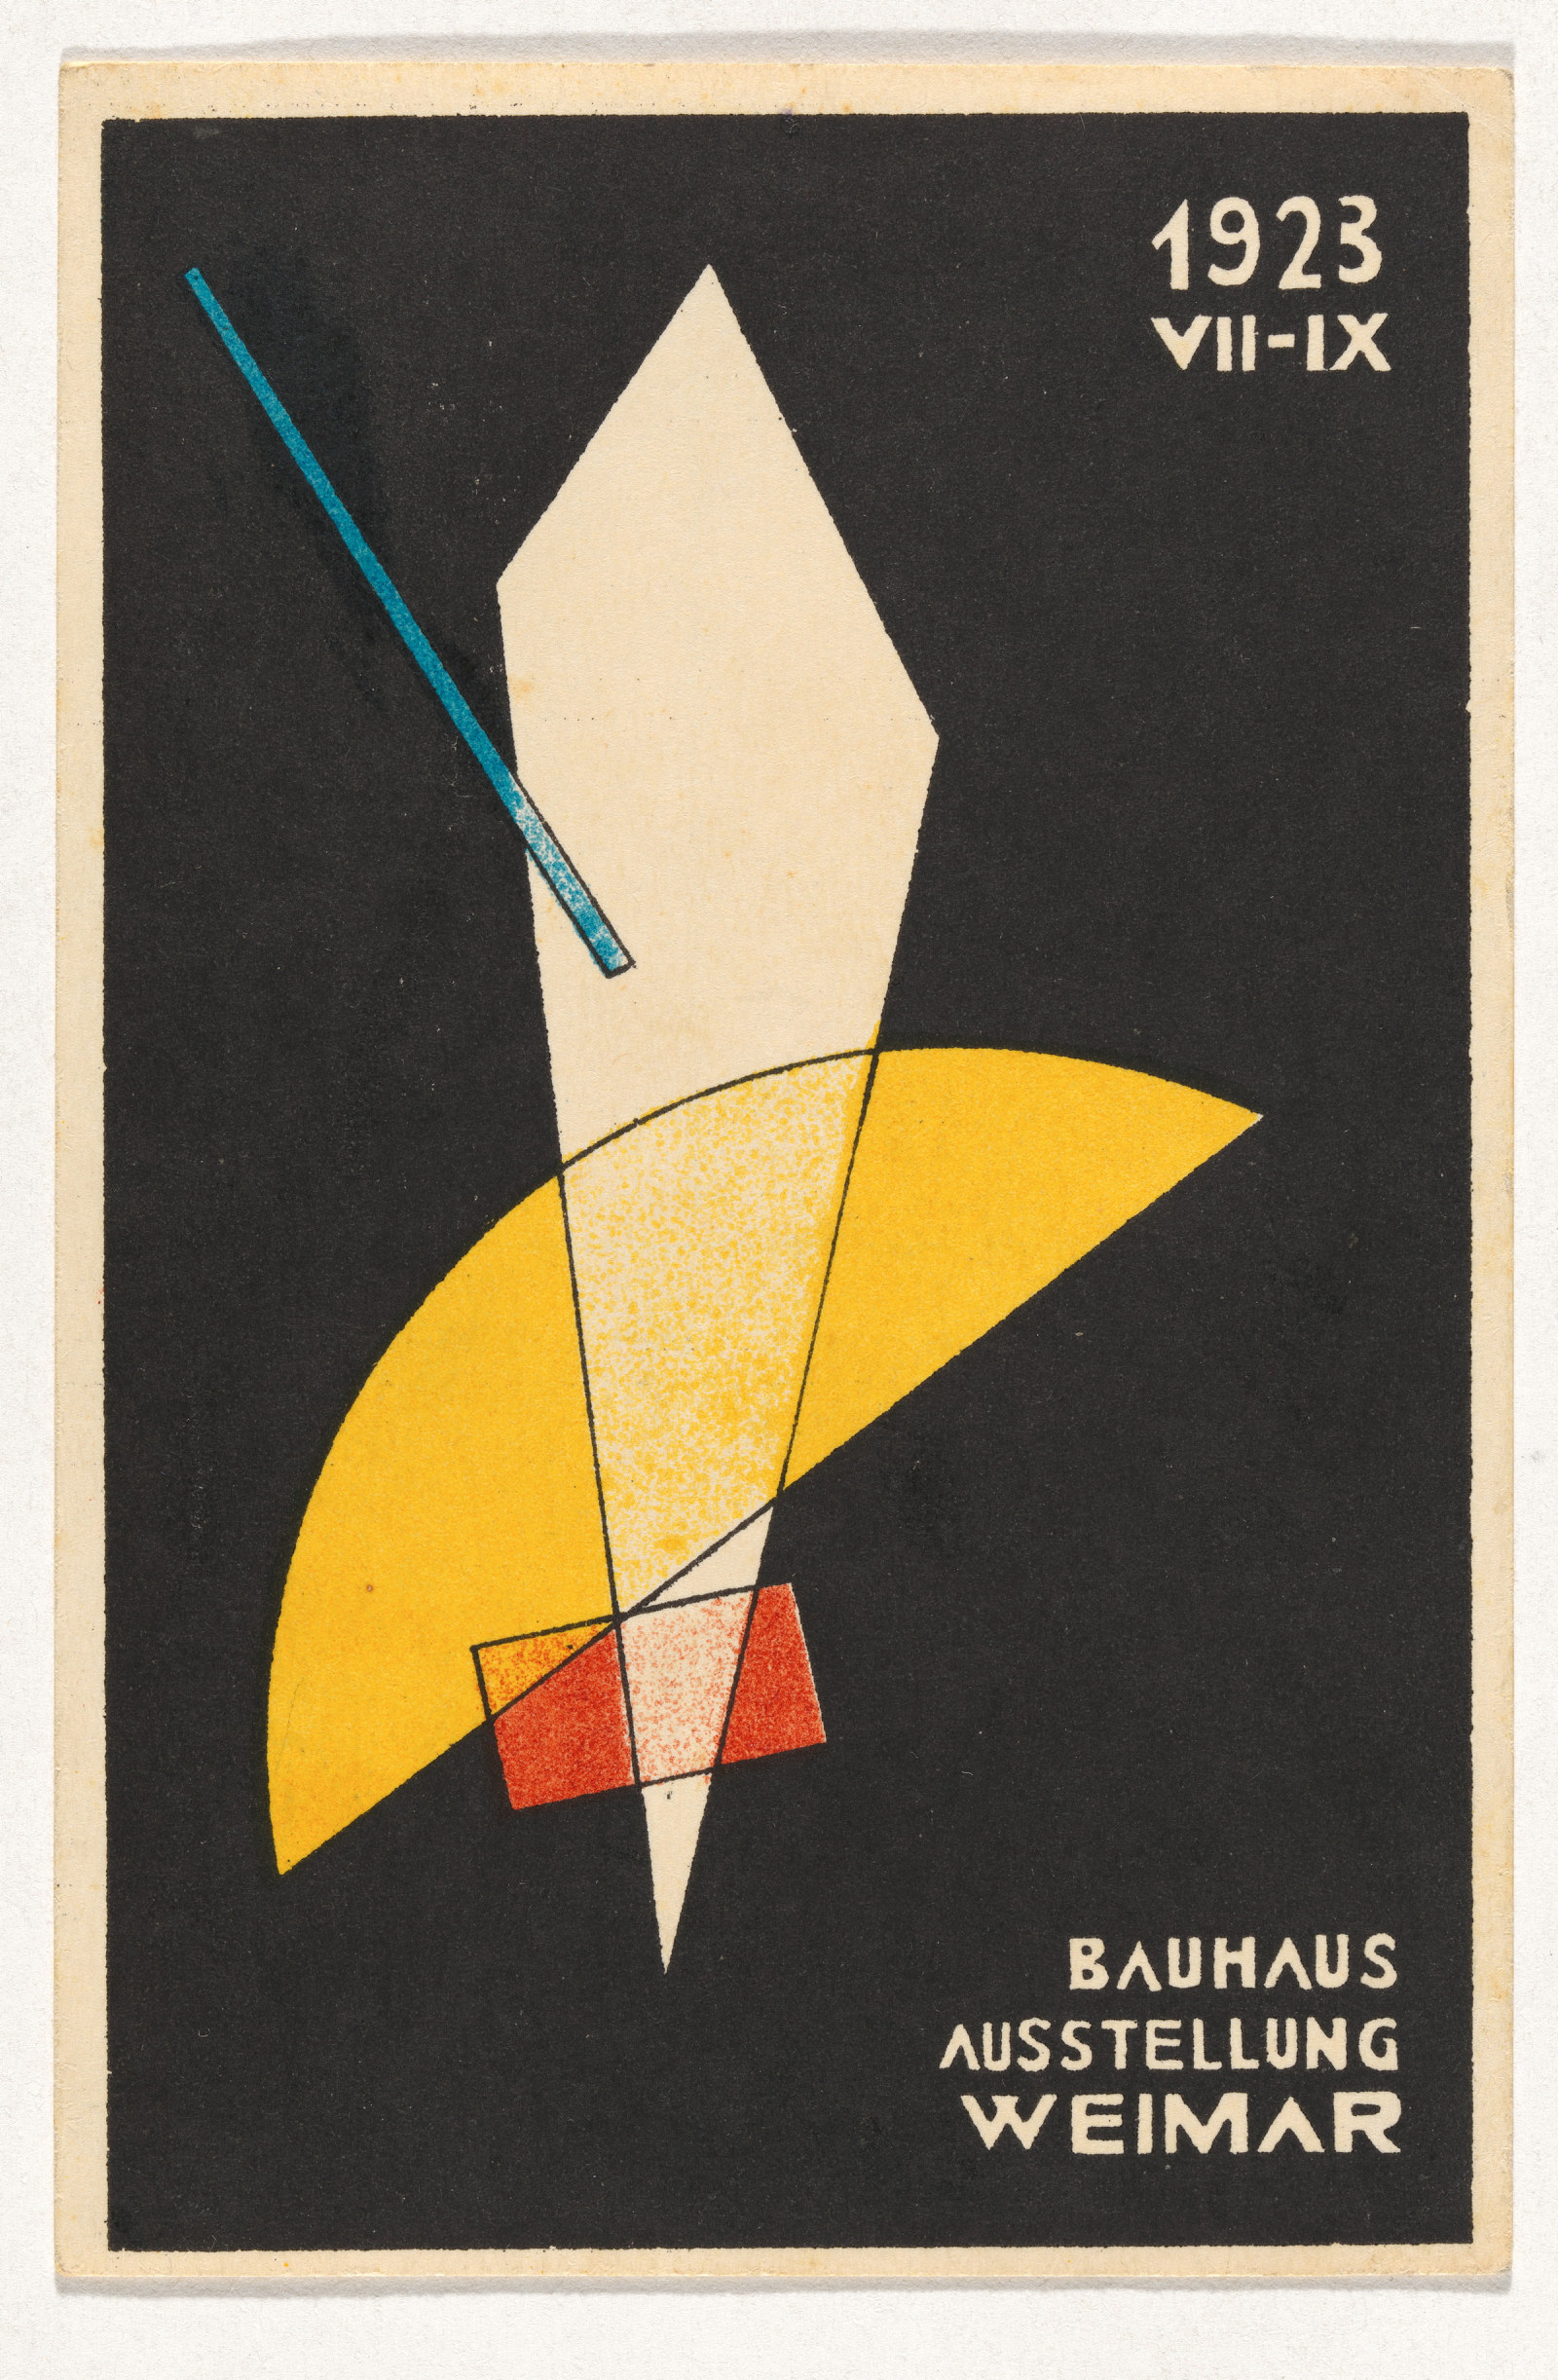 Postkarte zur Bauhaus-Ausstellung